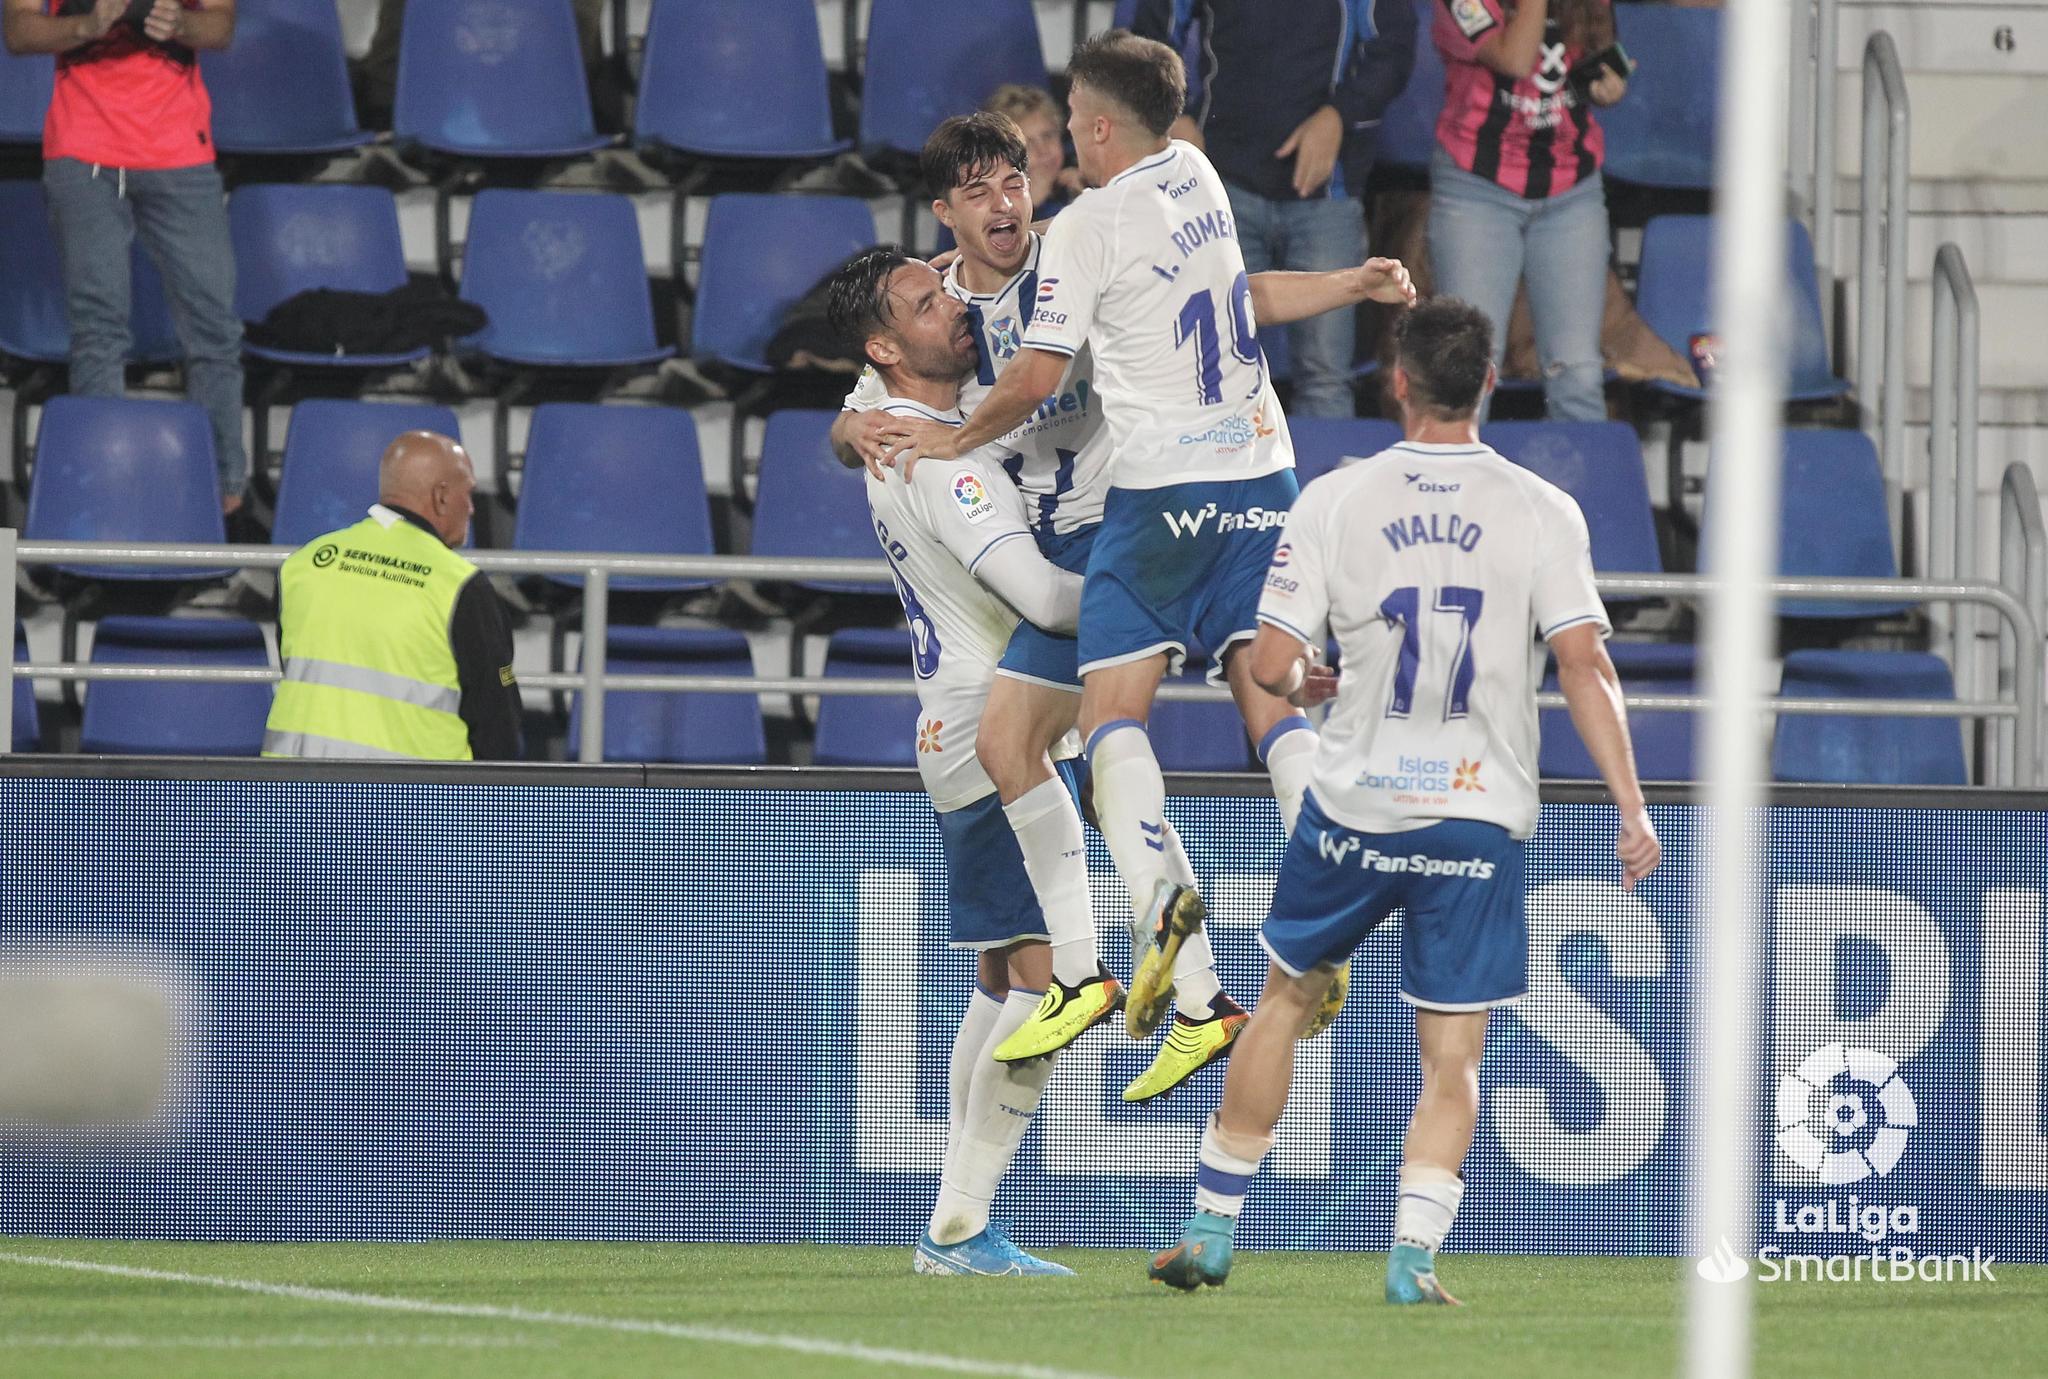 Enric Gallego y Teto, los dos goleadores, celebran un tanto junto a Iván Romero y Waldo